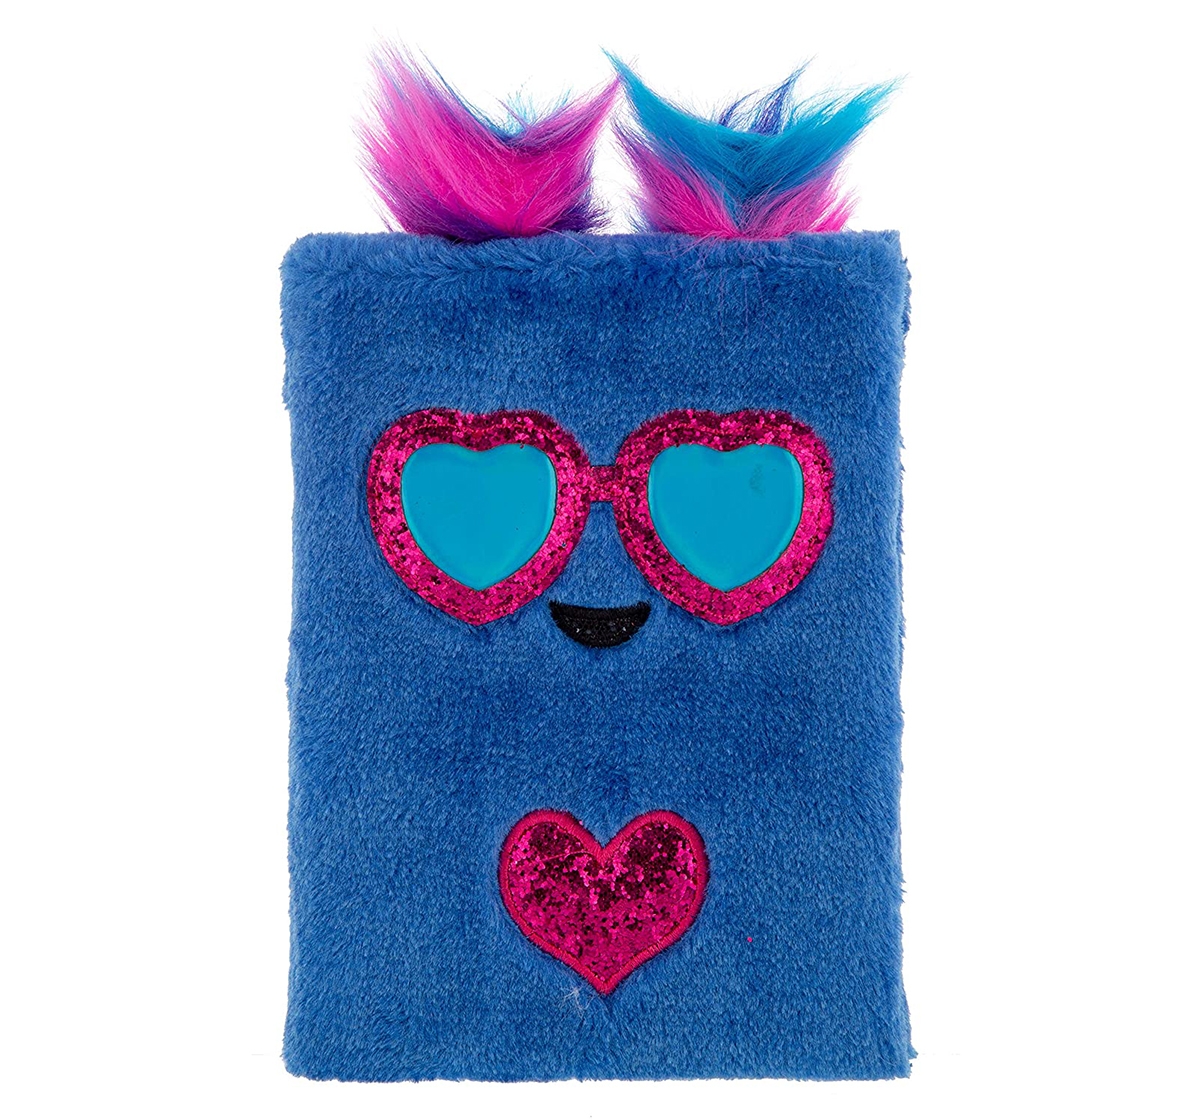 Mirada | Mirada Blue Owl Pencil Case, Unisex, 10Y+ (Multicolor)